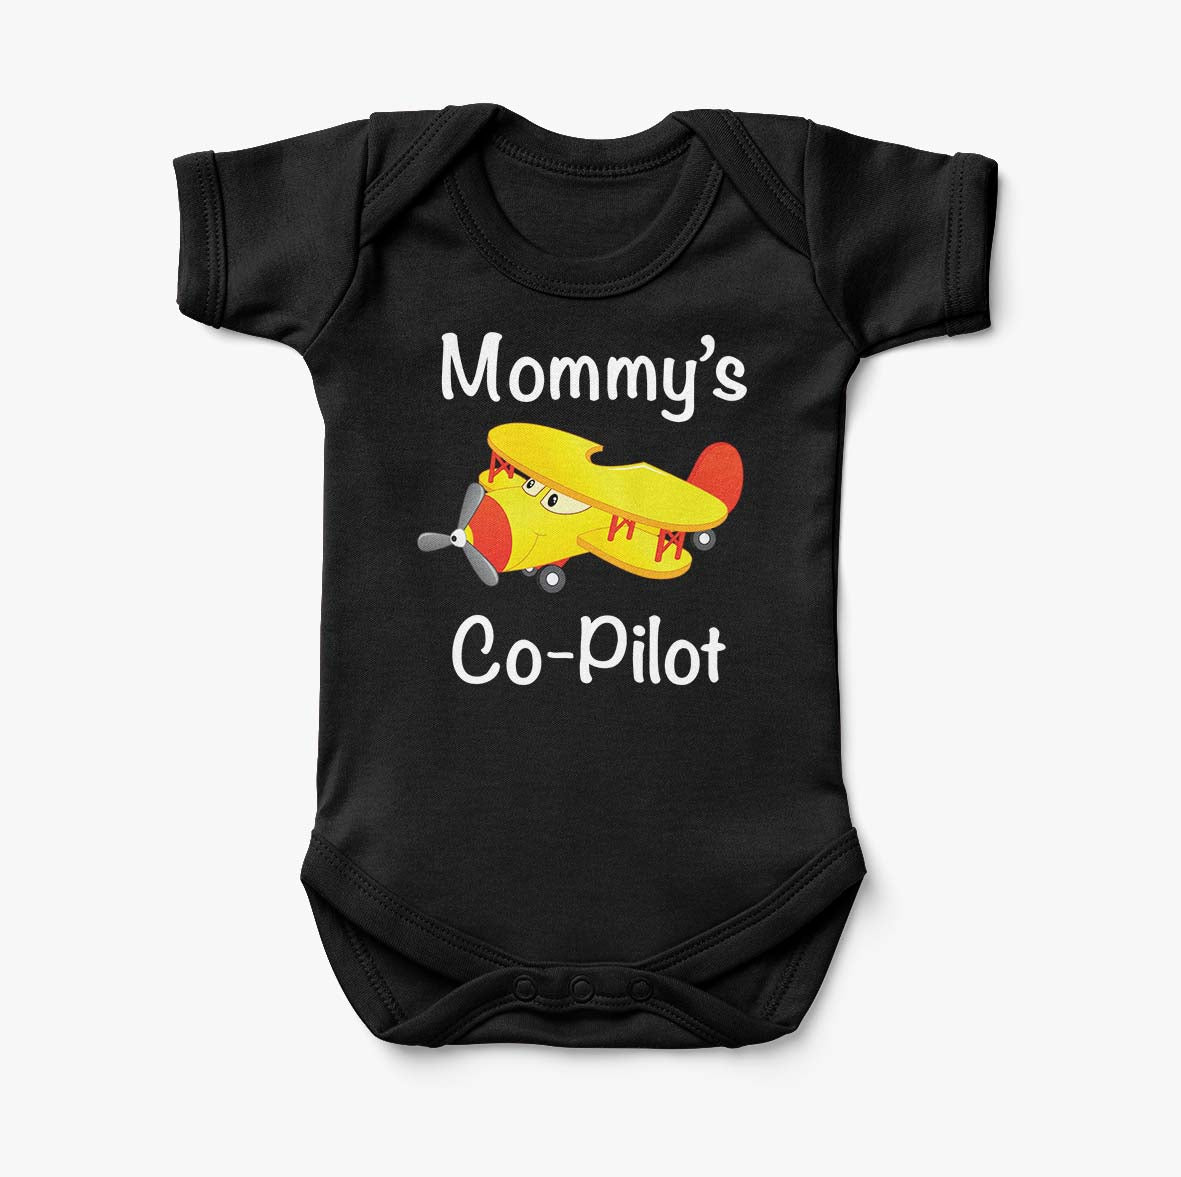 Mommy's Co-Pilot (Propeller2) Designed Baby Bodysuits